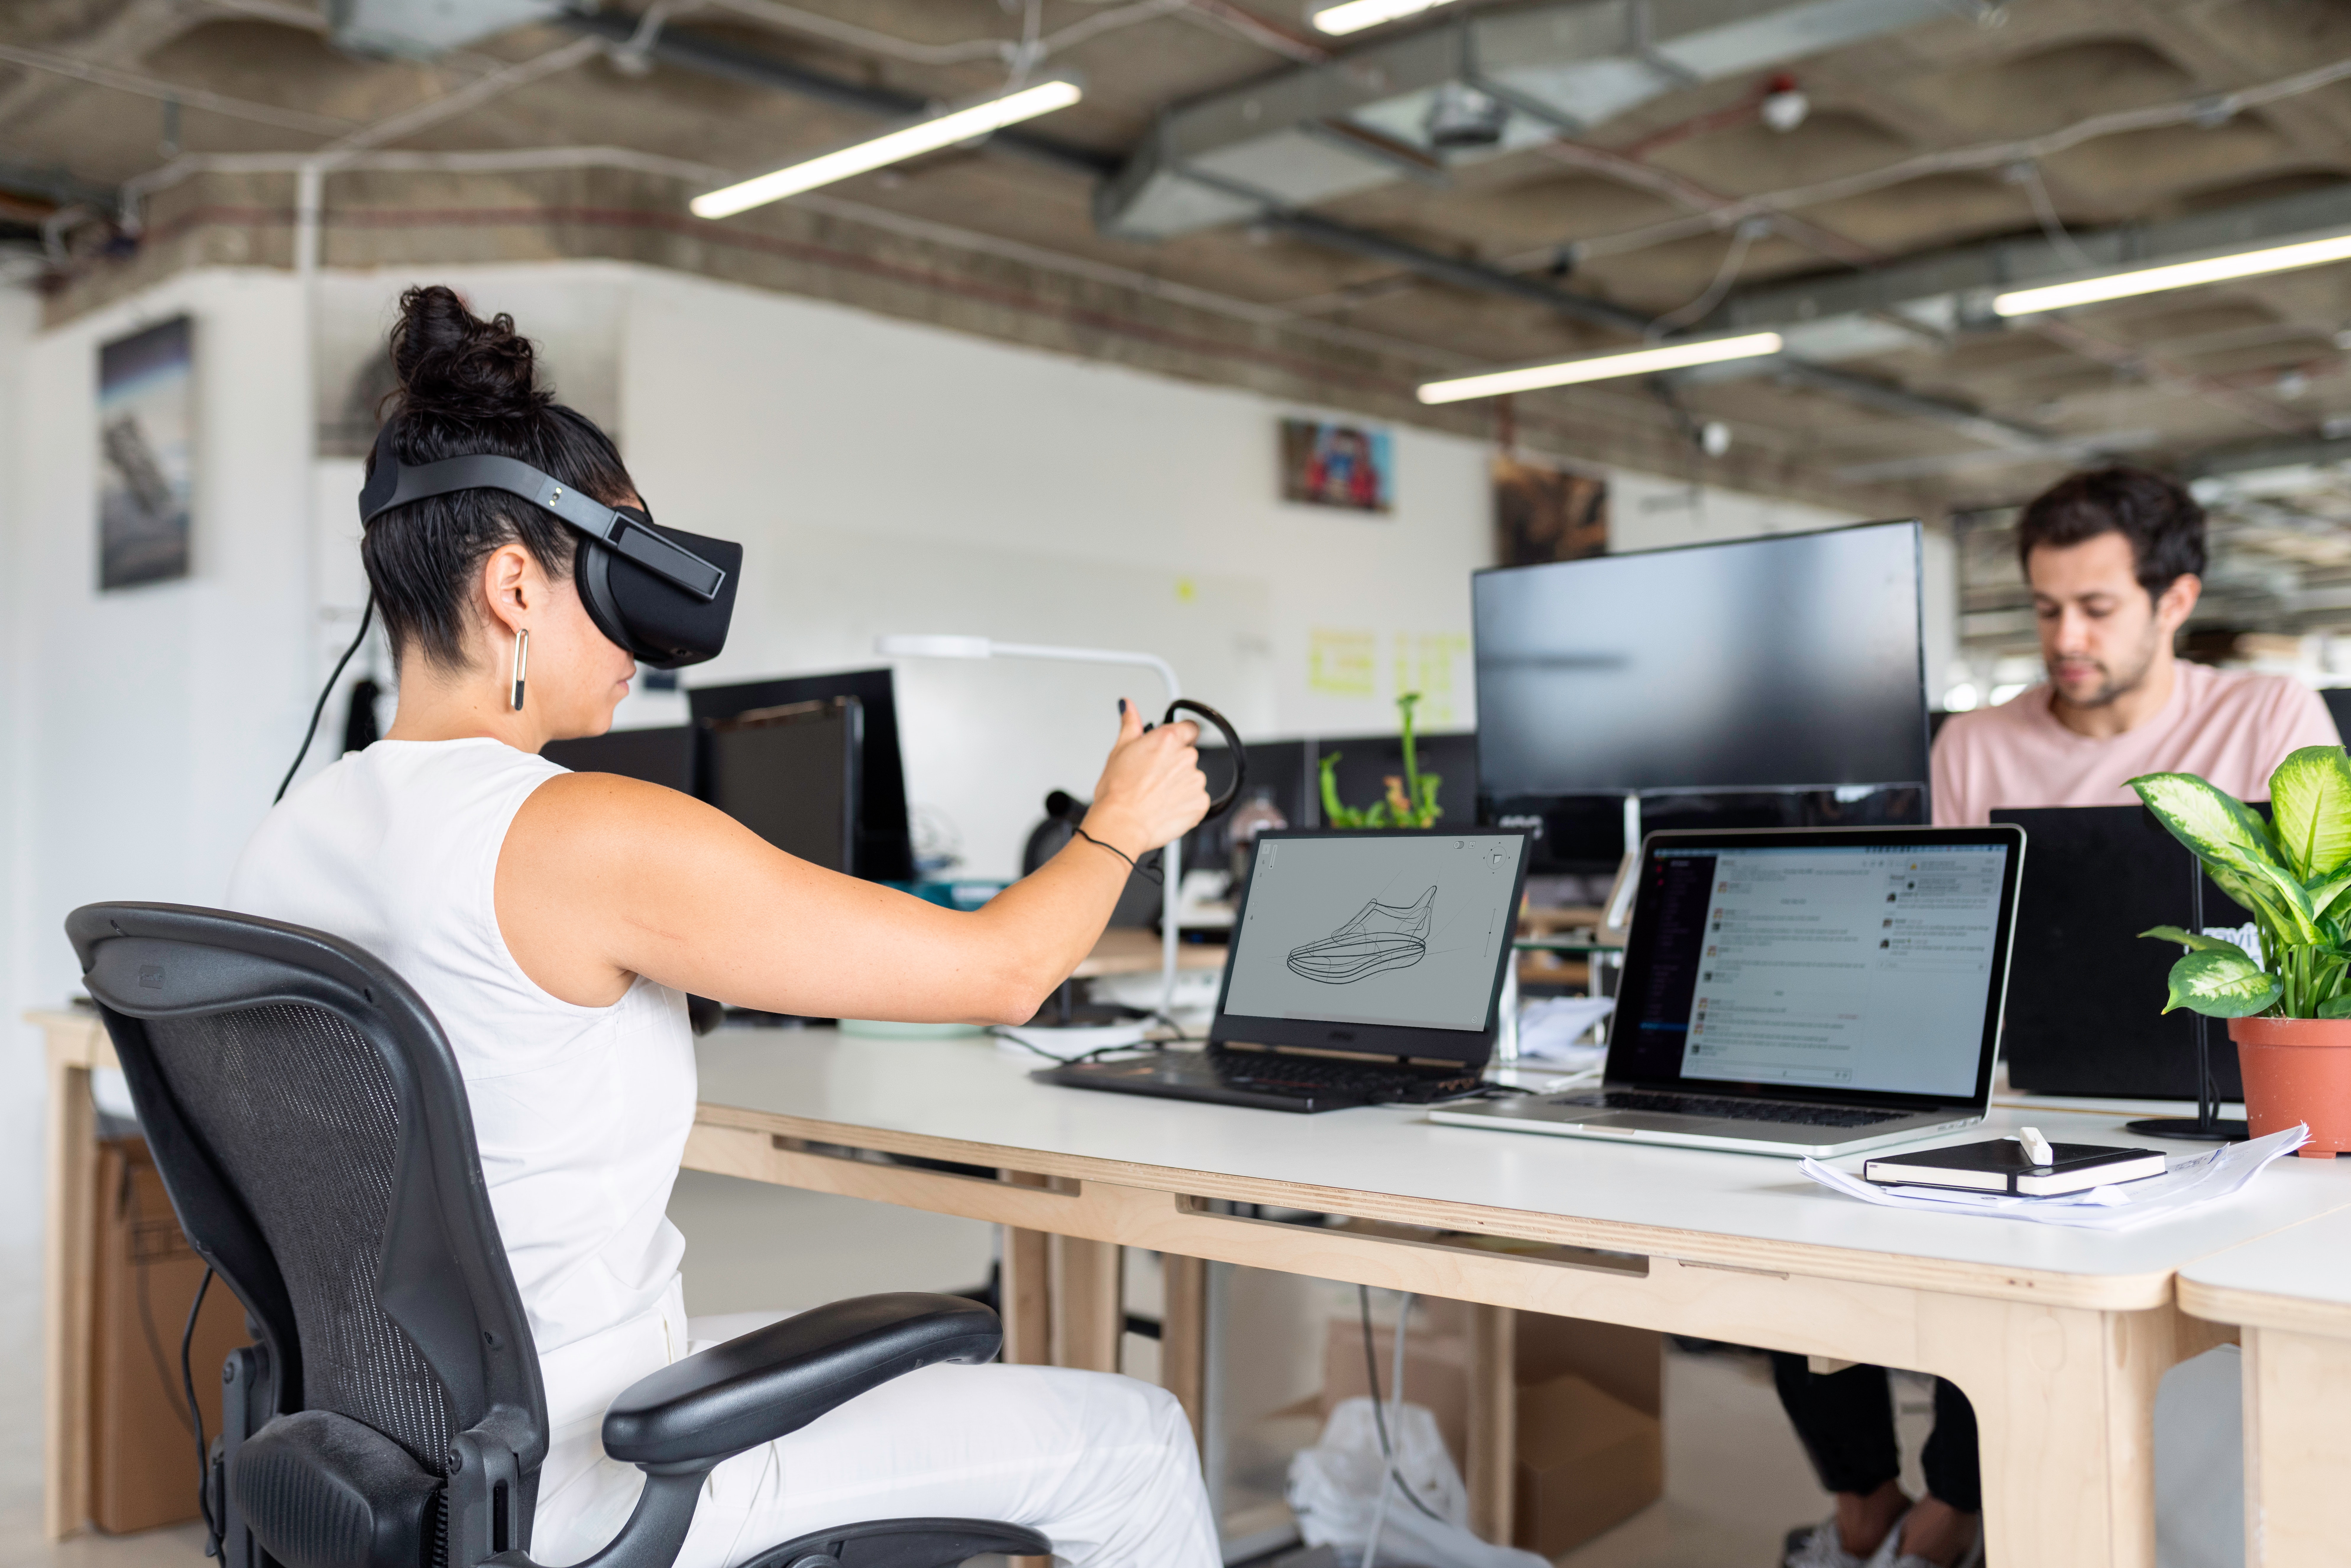 Testing experience. Интернет профессии. Женщина инженер в офисе. Инновации на рабочем месте. Инженер-программист VR.